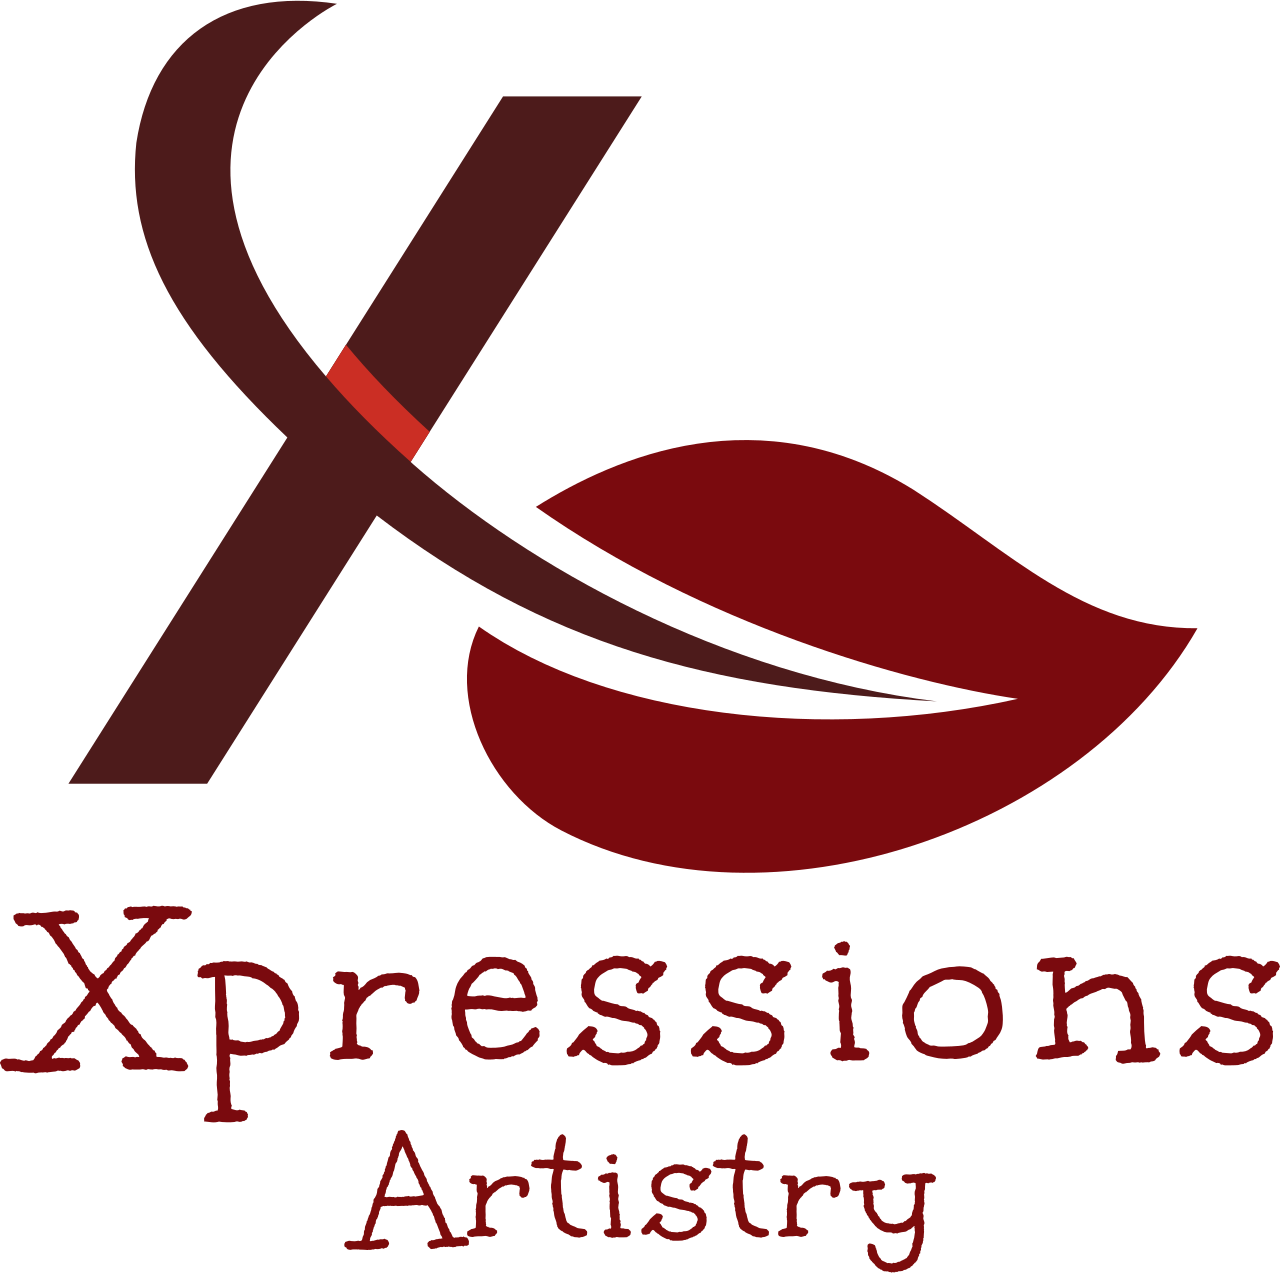 Xpressions 's logo